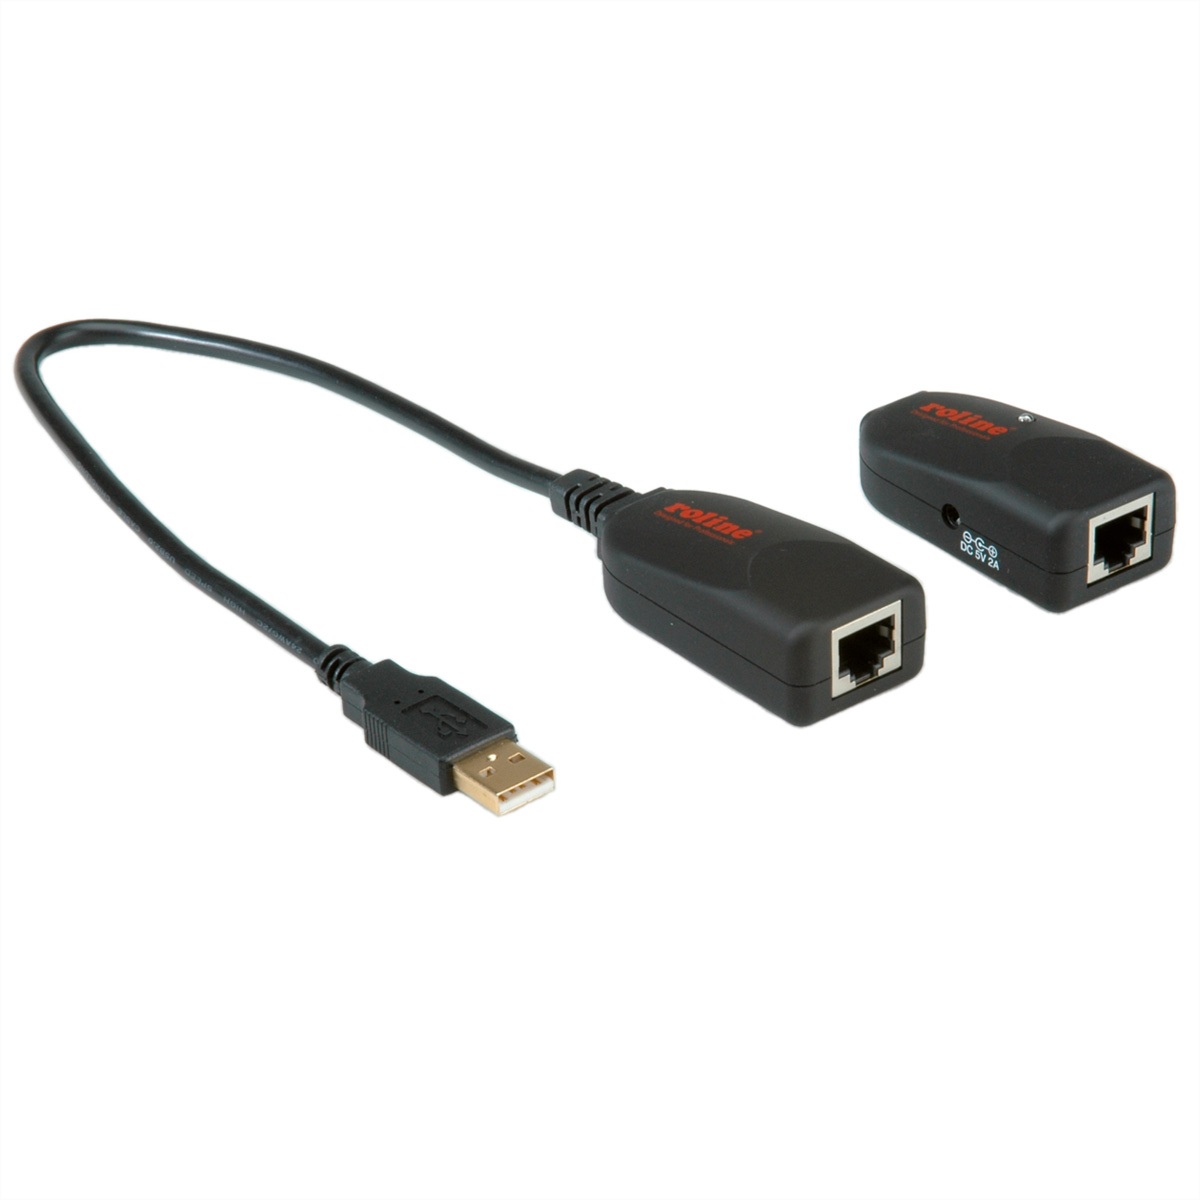 Verlängerung ROLINE 50m USB-Verlängerung RJ45, max. über USB 2.0